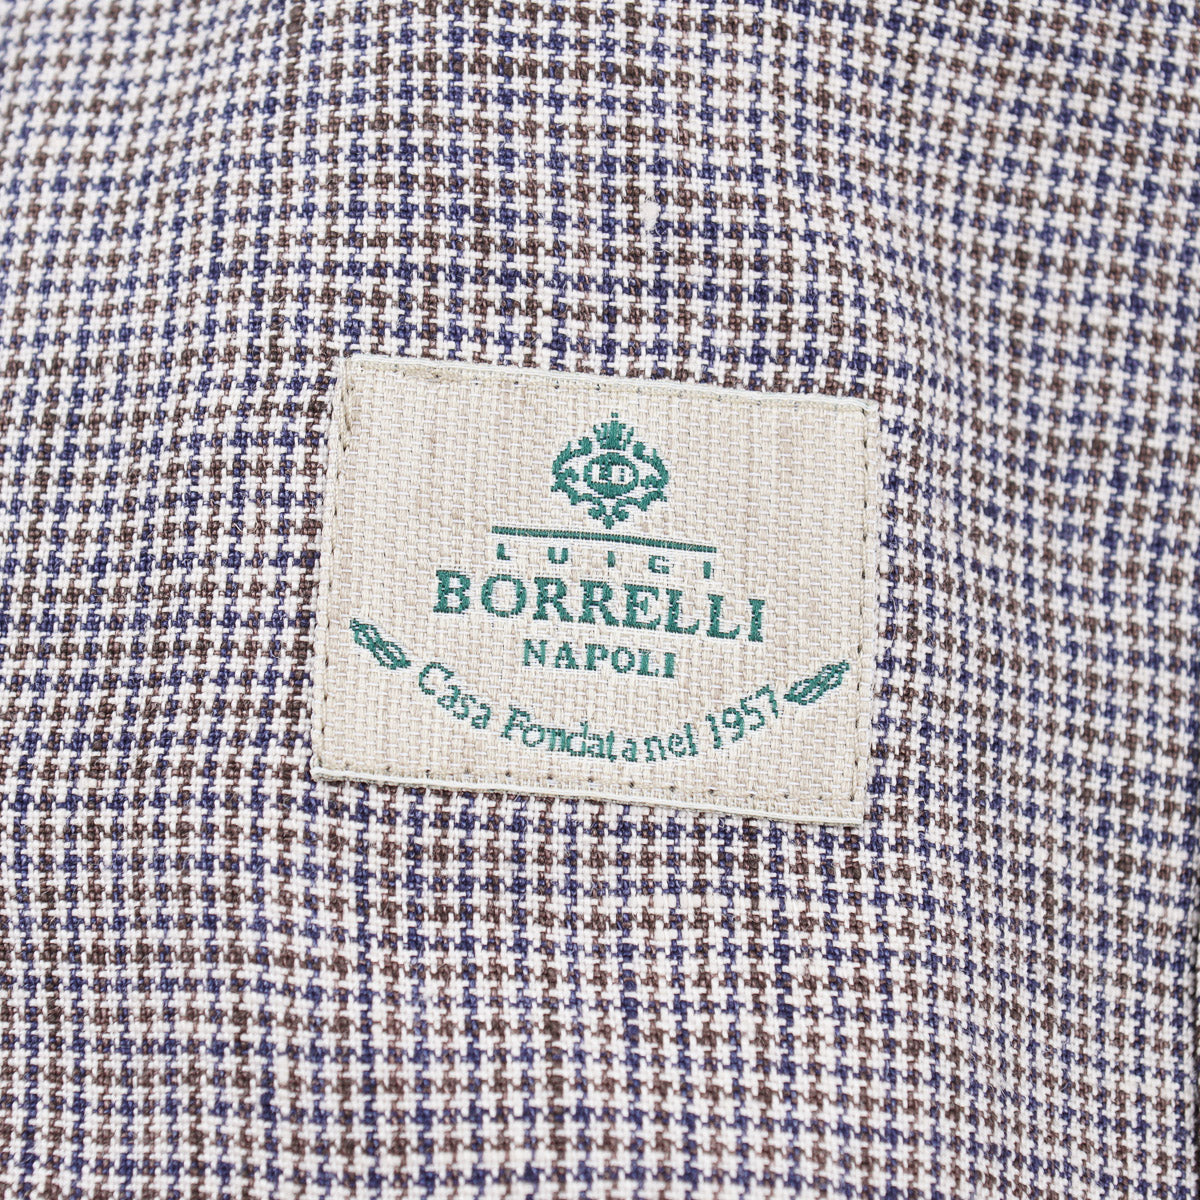 Luigi Borrelli Unlined Linen Suit - Top Shelf Apparel